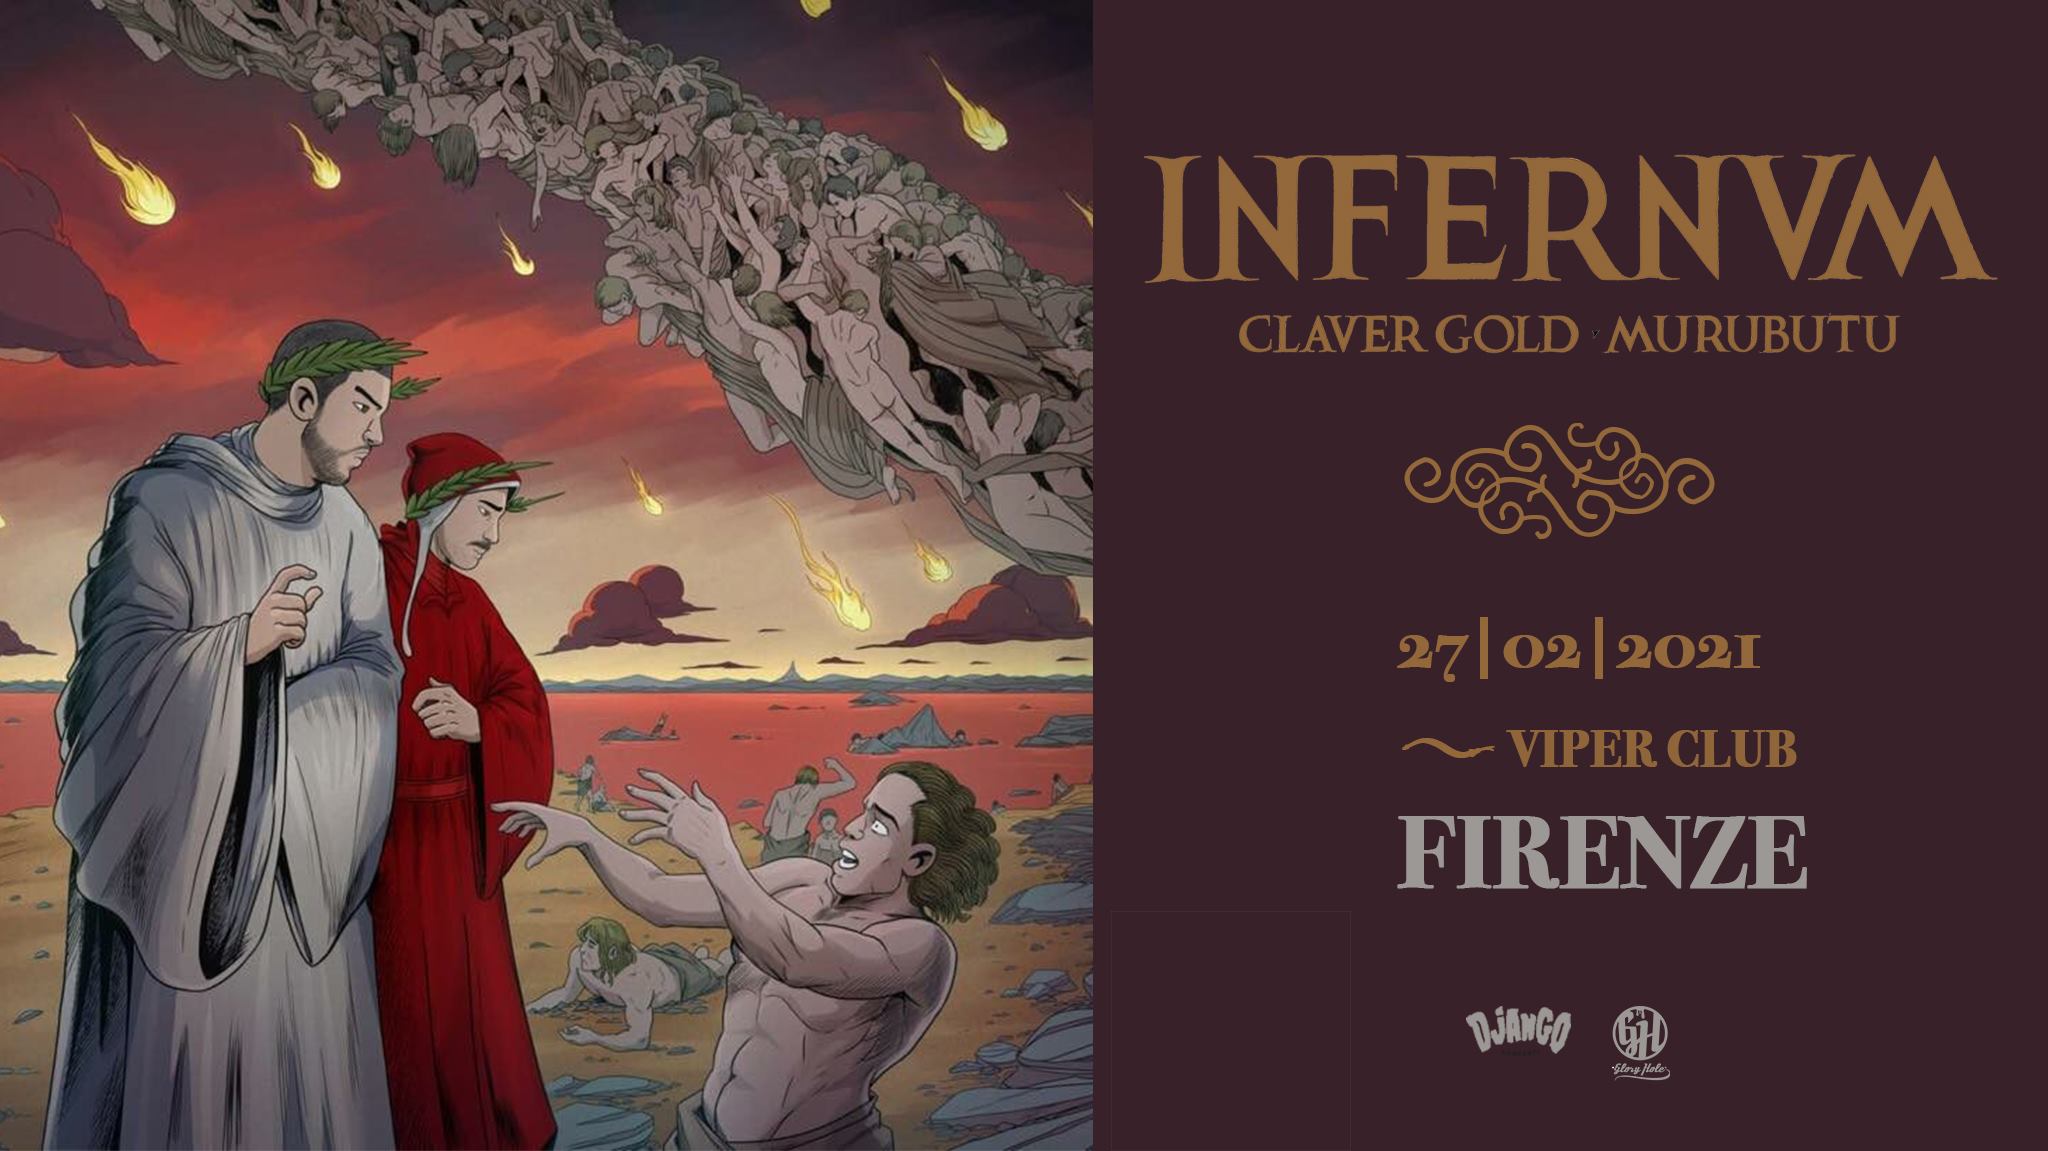 Claver Gold & Murubutu "Infernvm tour", Viper Club Firenze